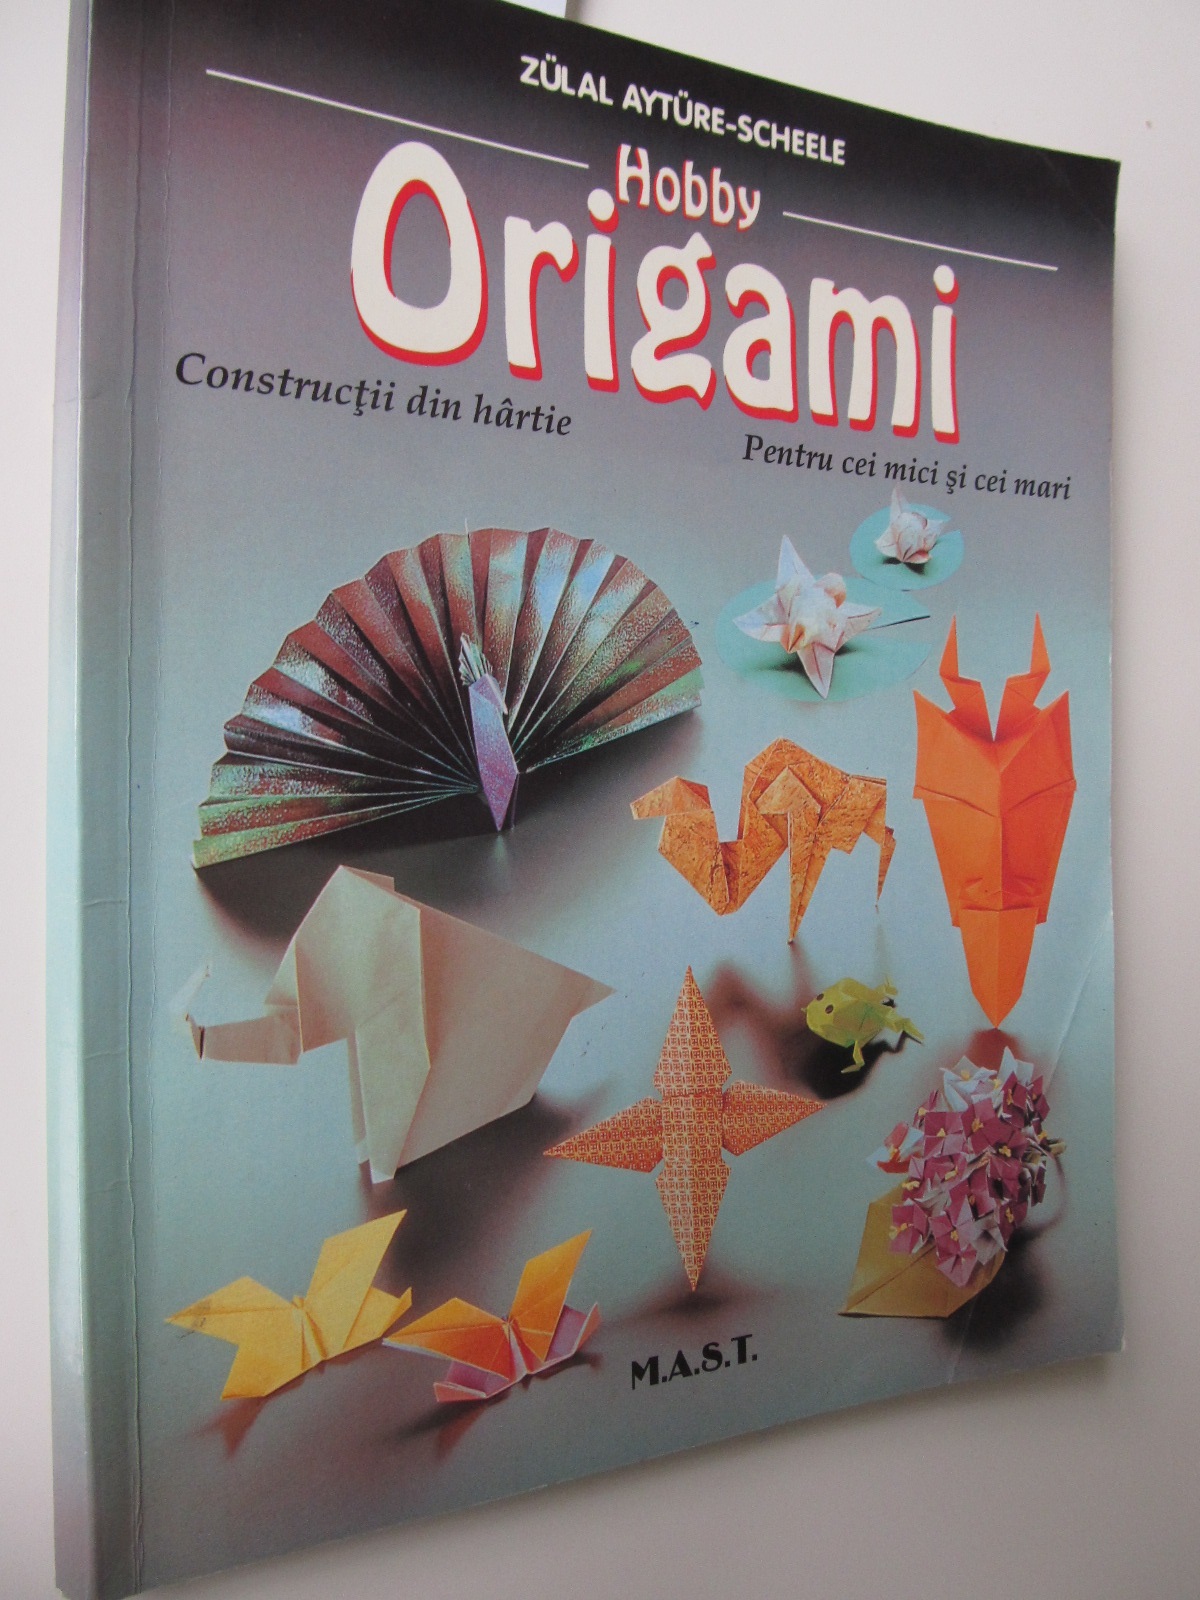 Origami - Constructii din hartie pentru cei mici si cei mari - Zulal Ayture Scheele | Detalii carte